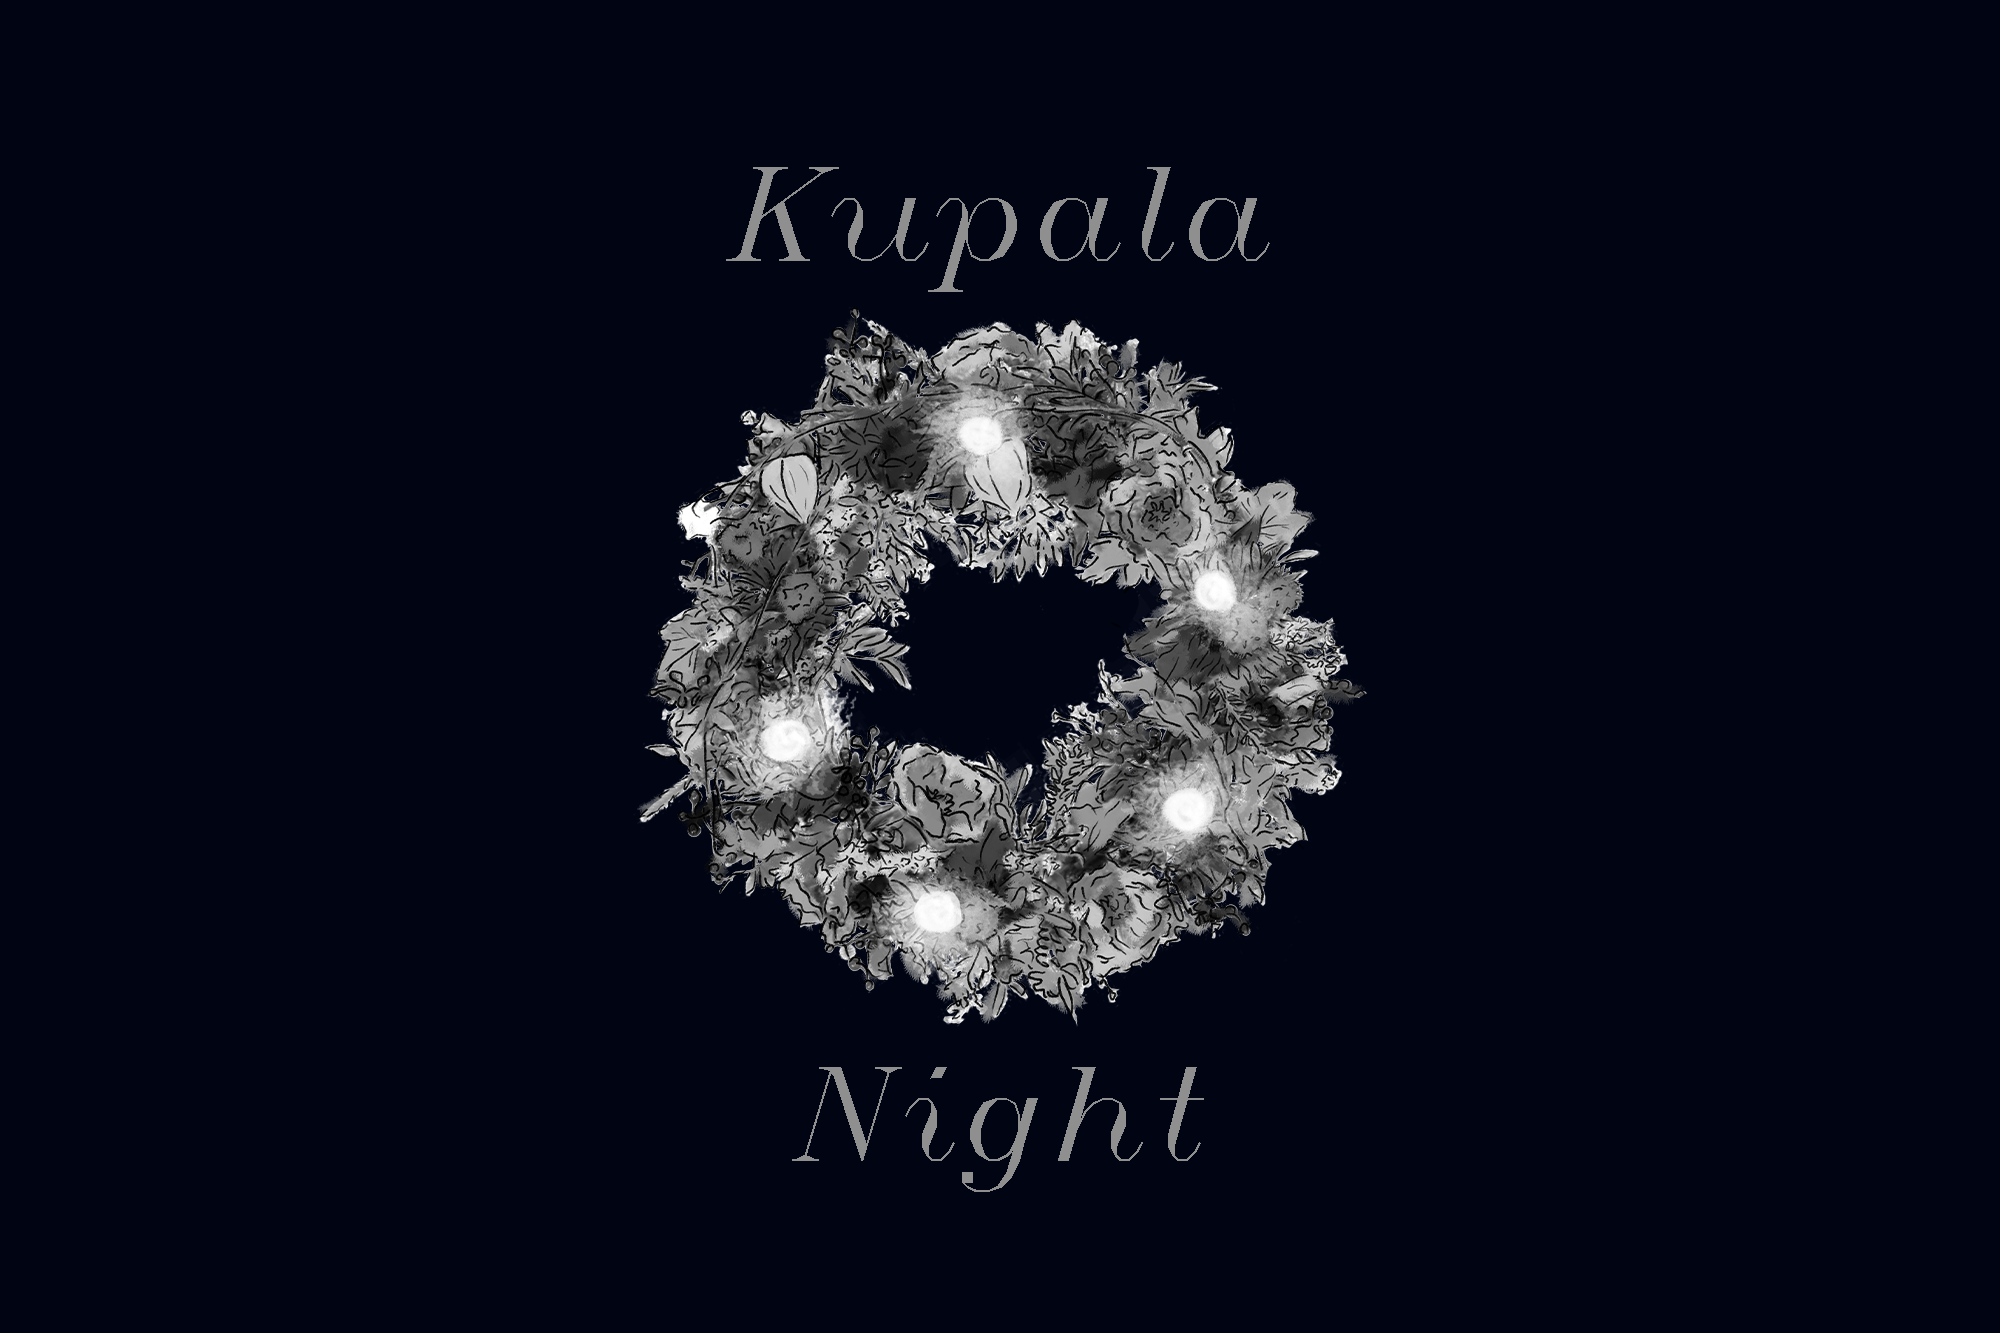 Kupala Night